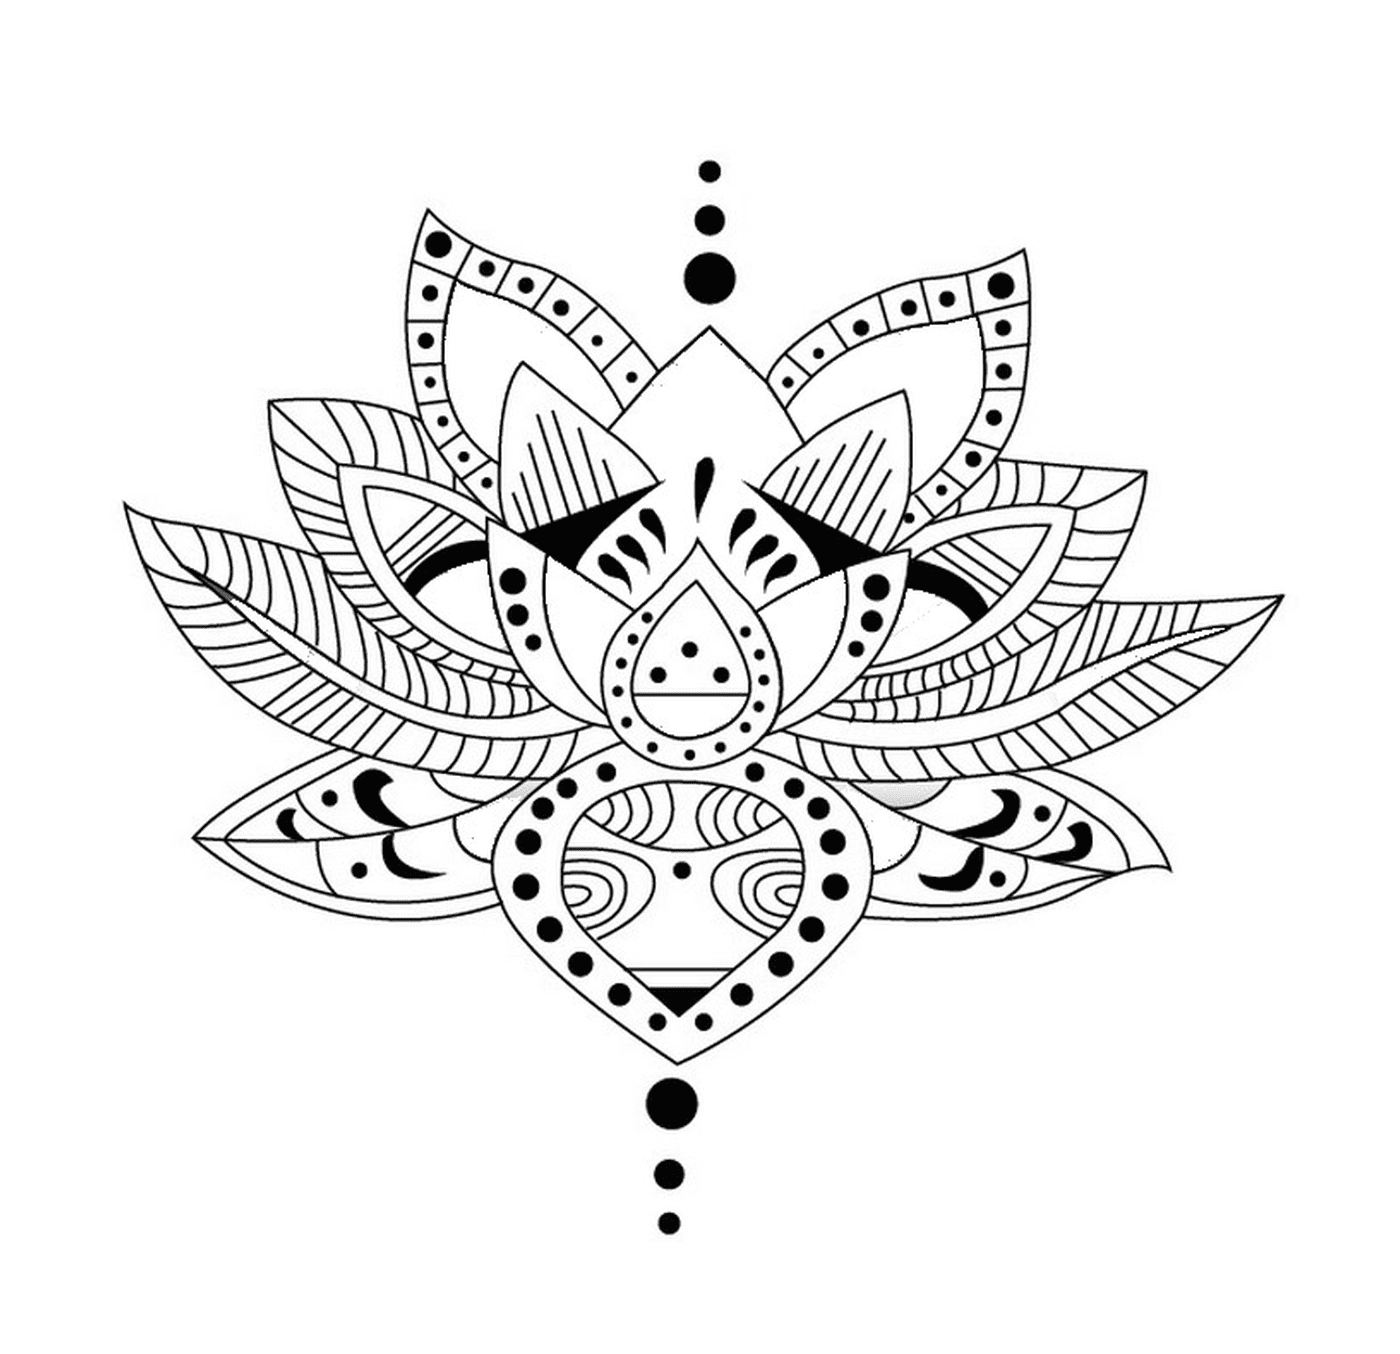   Une fleur de lotus avec des points 